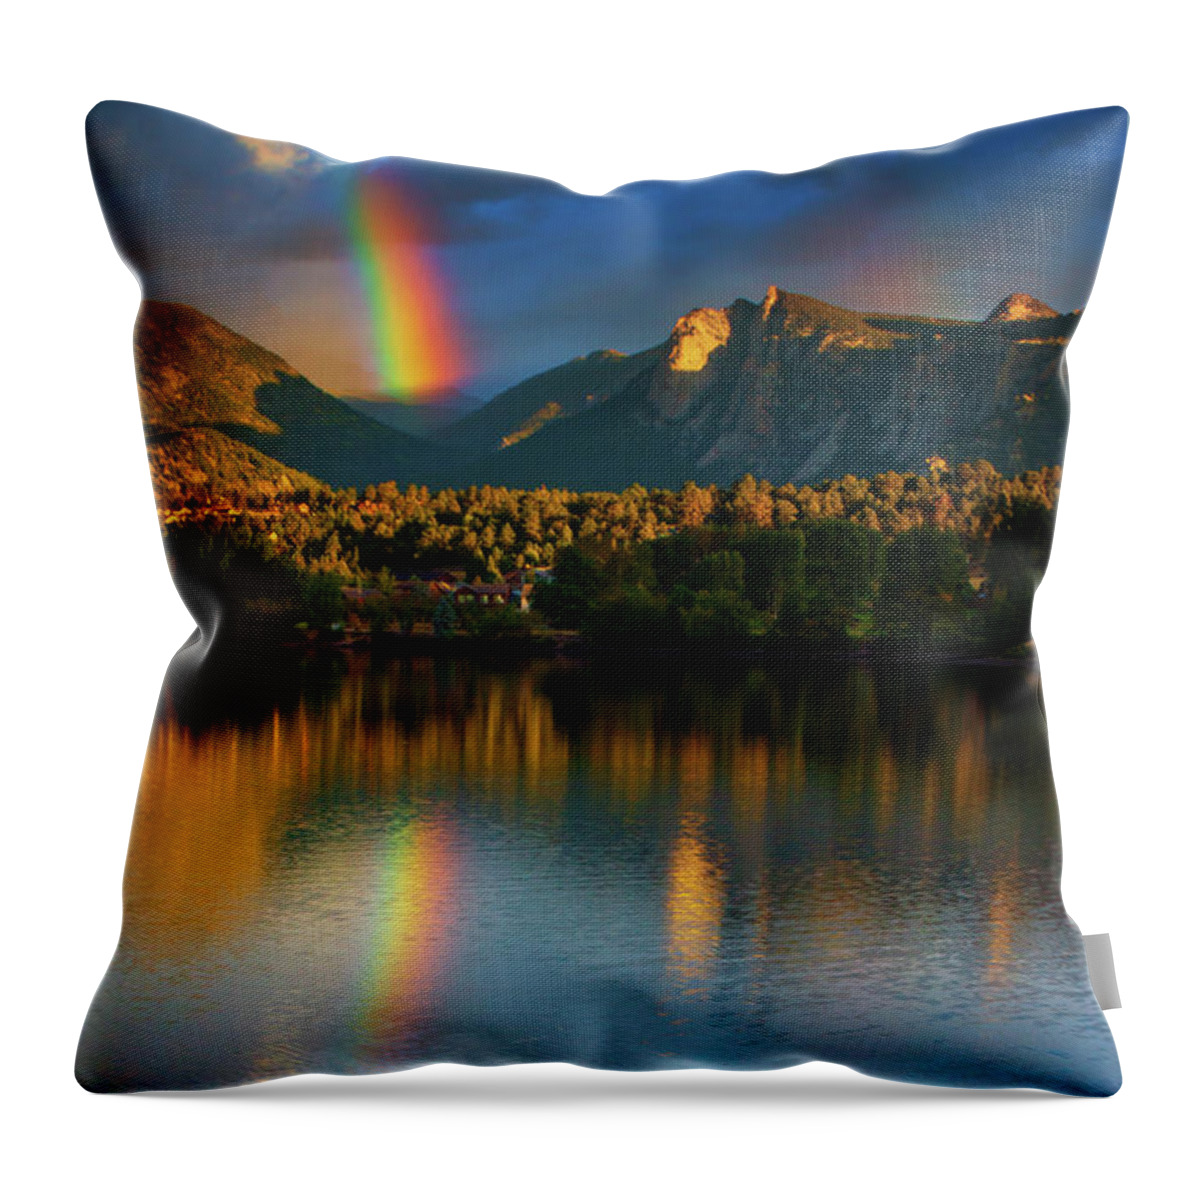 Colorado Throw Pillow featuring the photograph Mountain Rainbows by John De Bord